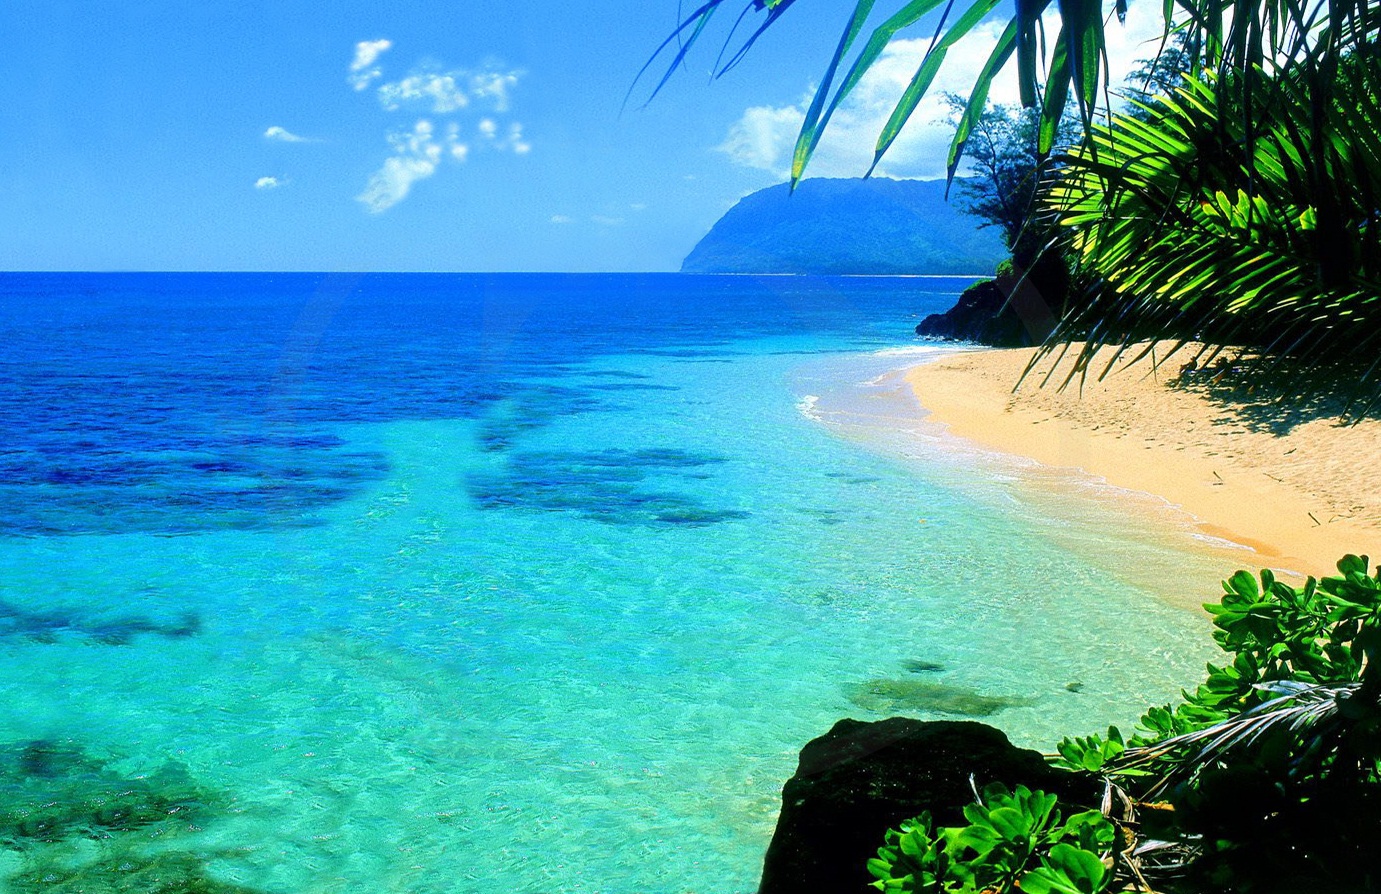 Tourism: Hawaii Island